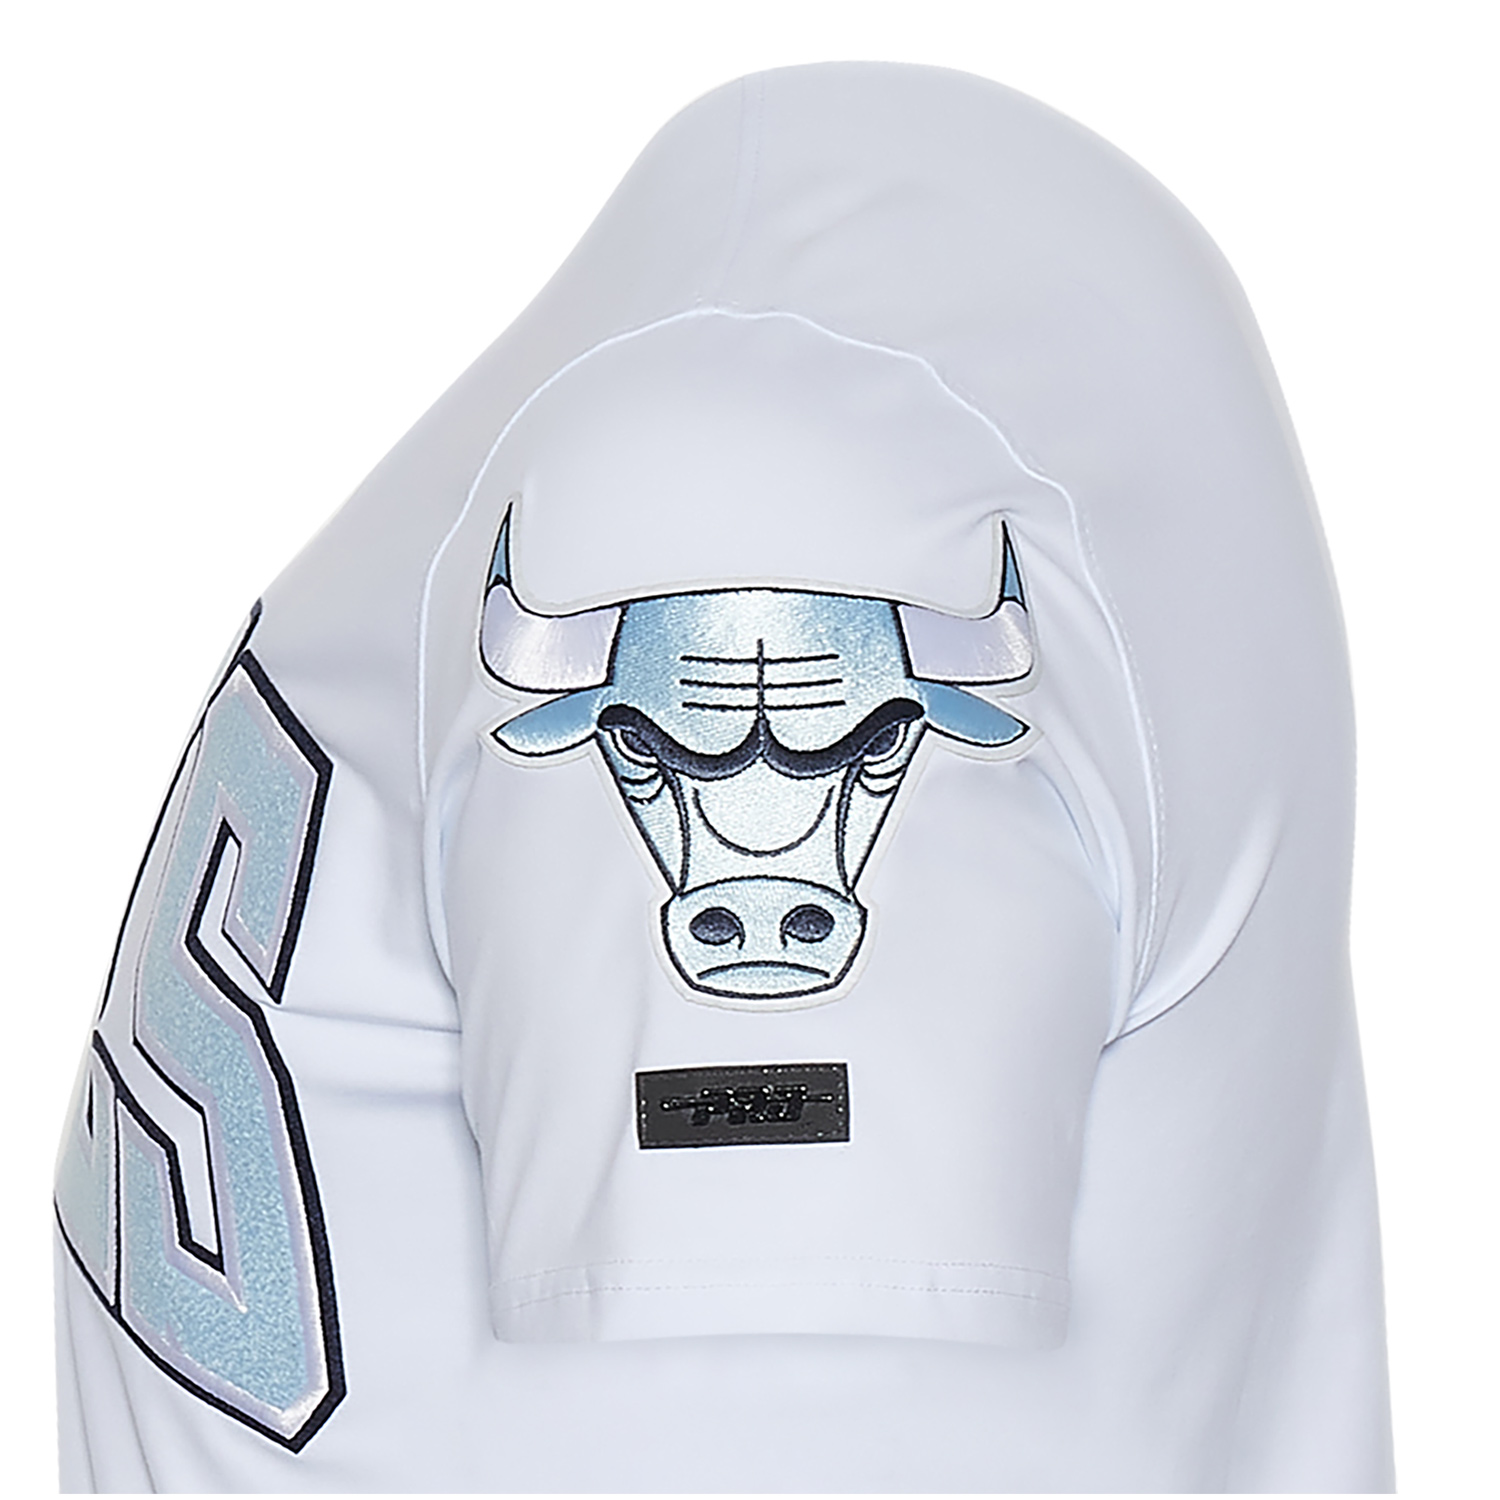 jordan-6-unc-bulls-pro-standard-t-shirt-white-blue-2